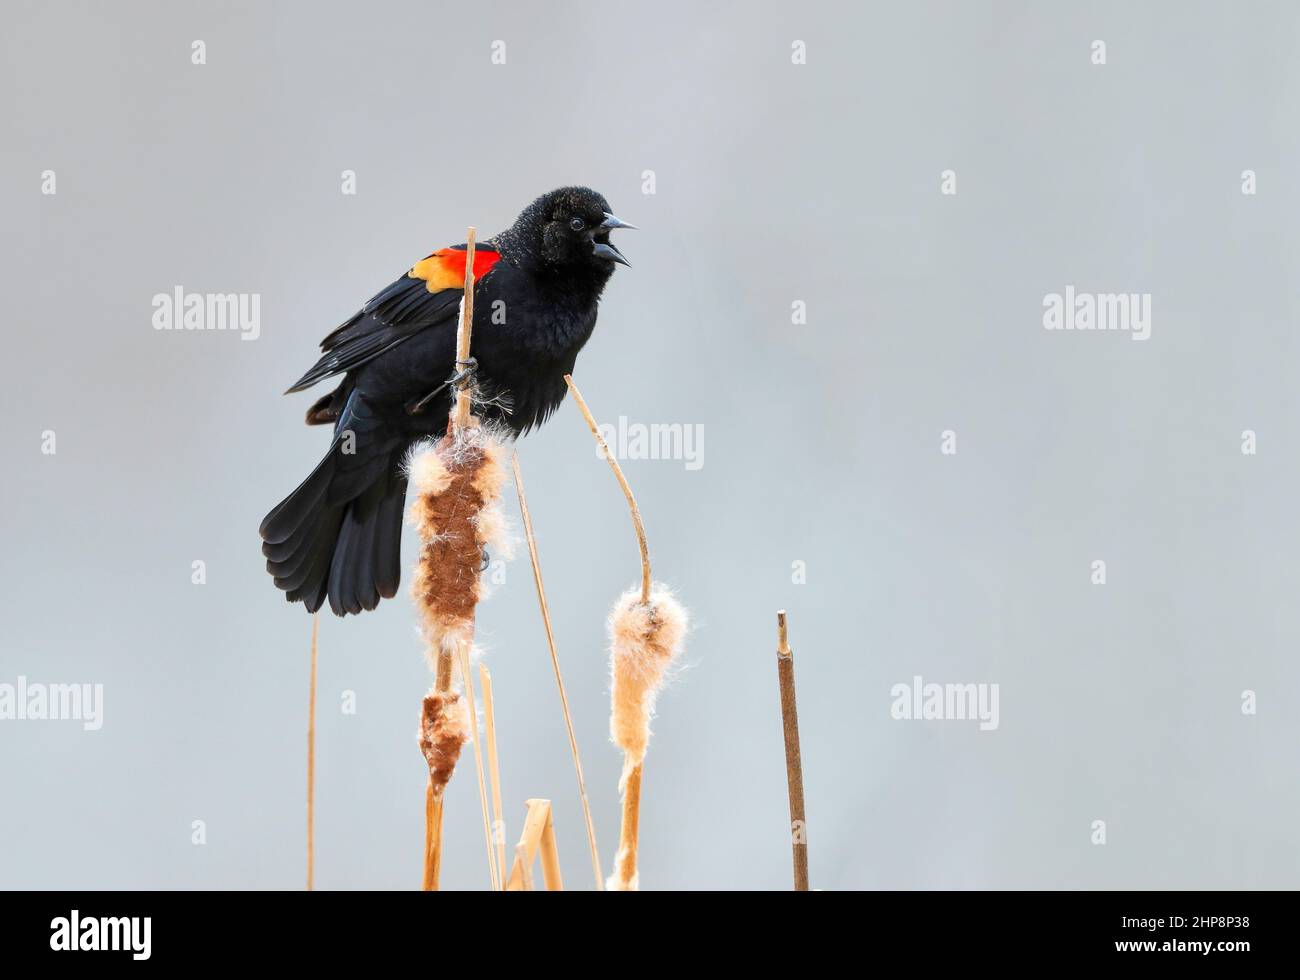 Un jeune Blackbird ailé de rouge s'accrochant à la plus haute queue d'un petit groupe et appelant. Avec un arrière-plan neutre pâle. Banque D'Images